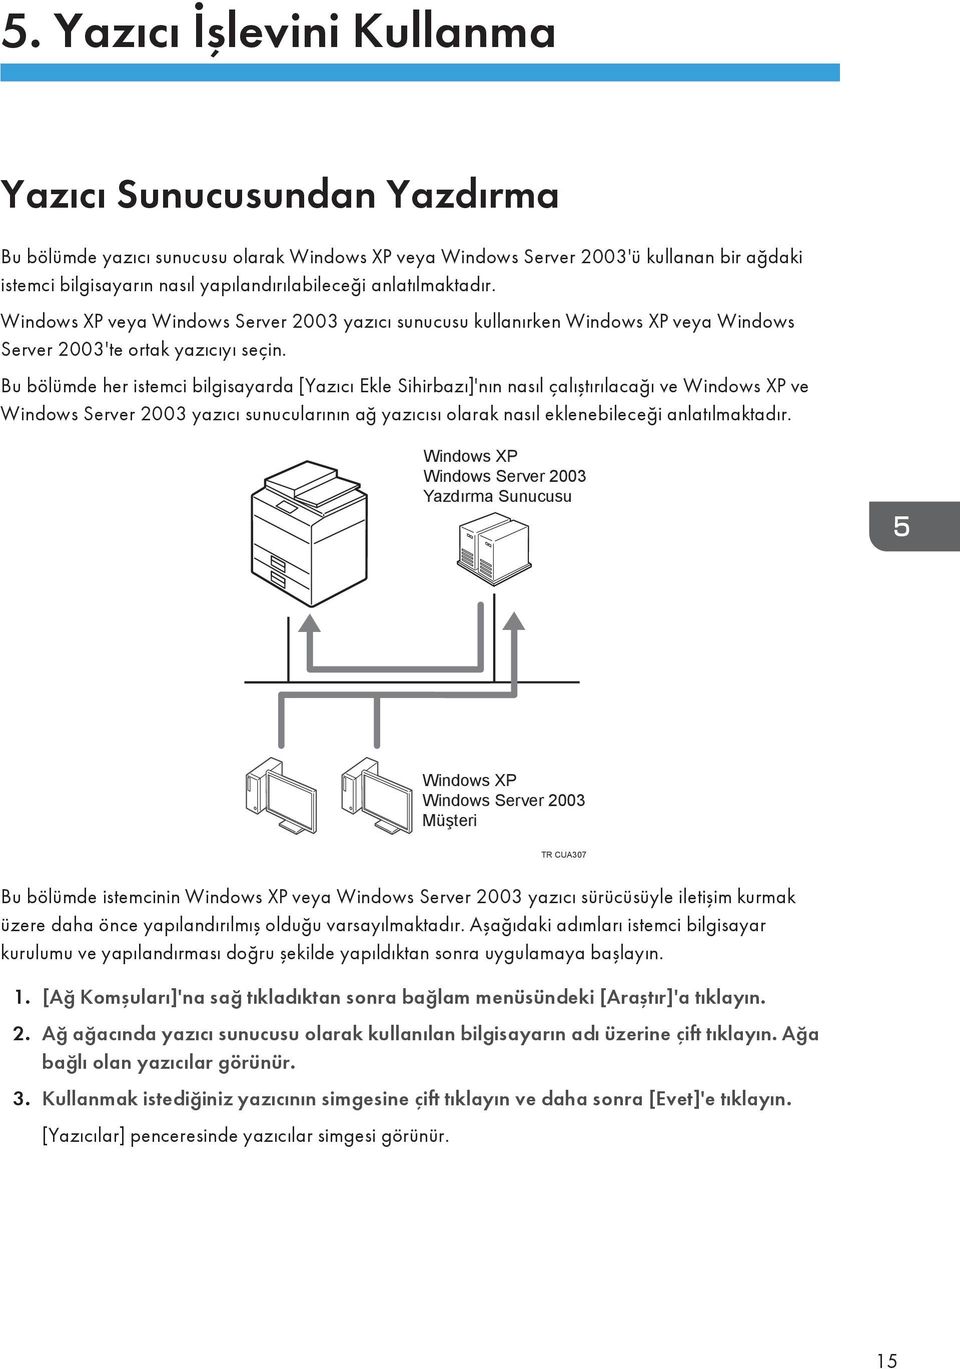 Bu bölümde her istemci bilgisayarda [Yazıcı Ekle Sihirbazı]'nın nasıl çalıştırılacağı ve Windows XP ve Windows Server 2003 yazıcı sunucularının ağ yazıcısı olarak nasıl eklenebileceği anlatılmaktadır.